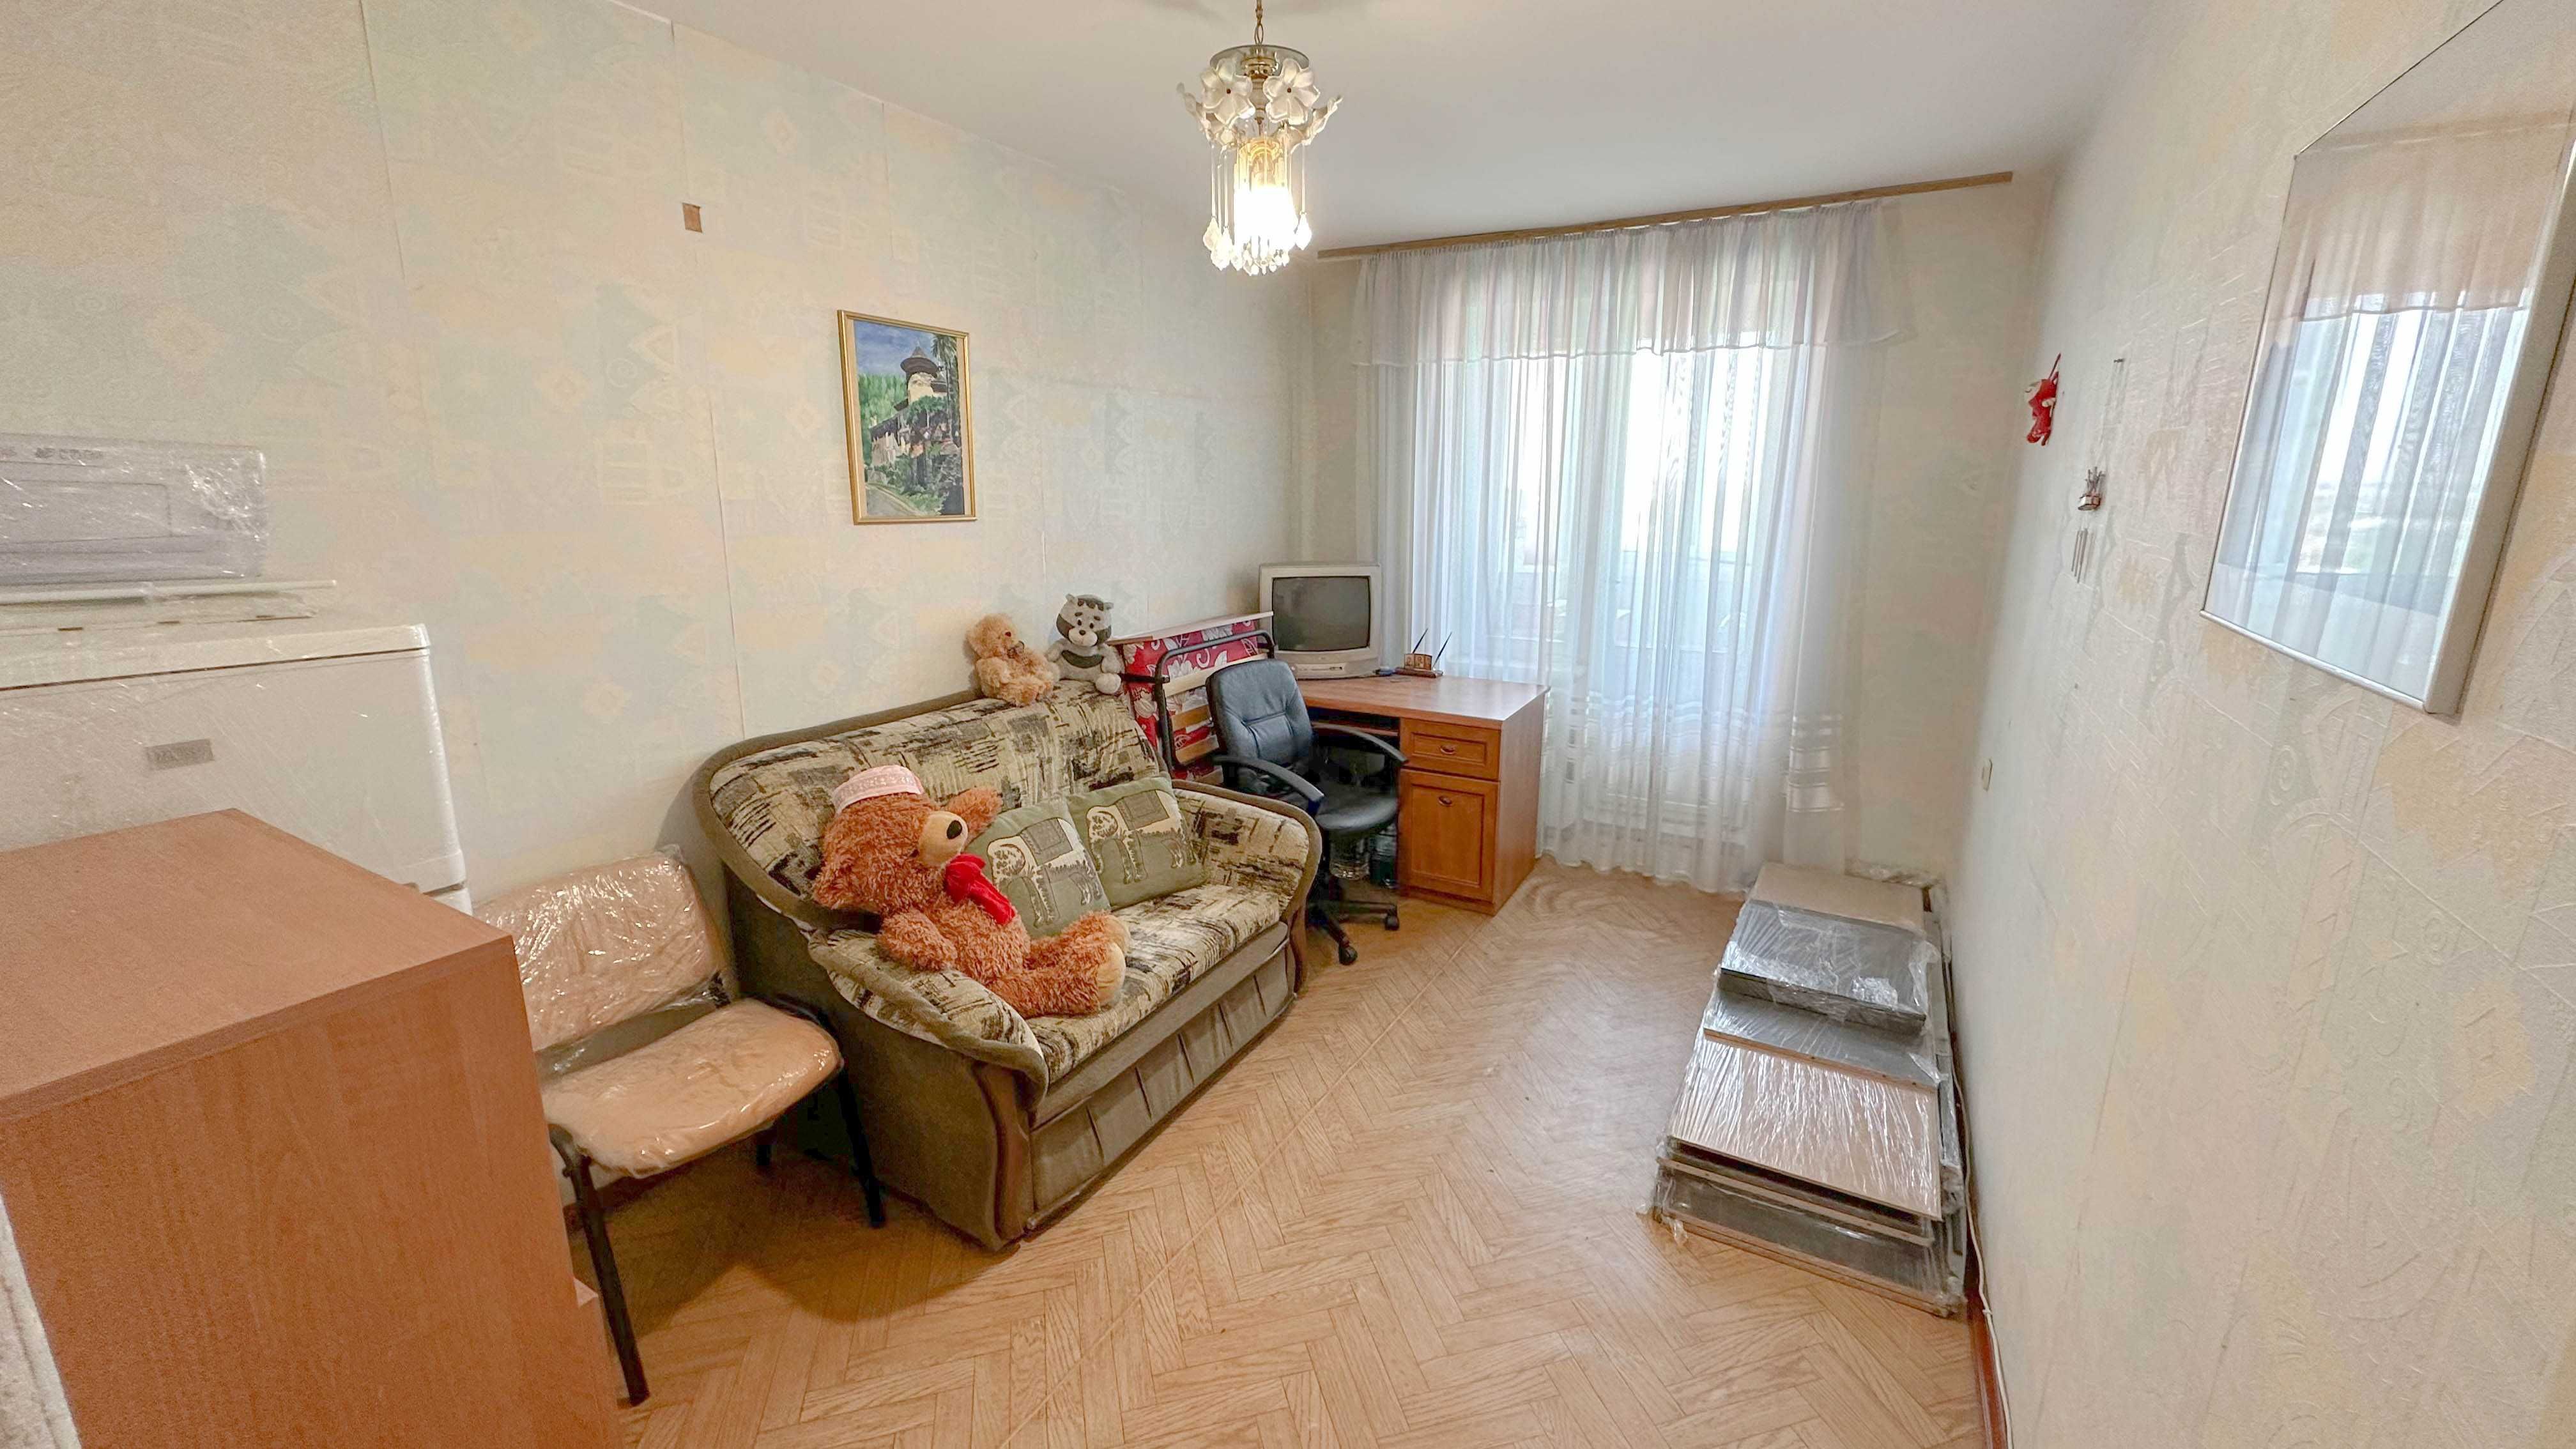 Продам 2-х комнатную квартиру в ЦЕНТРЕ